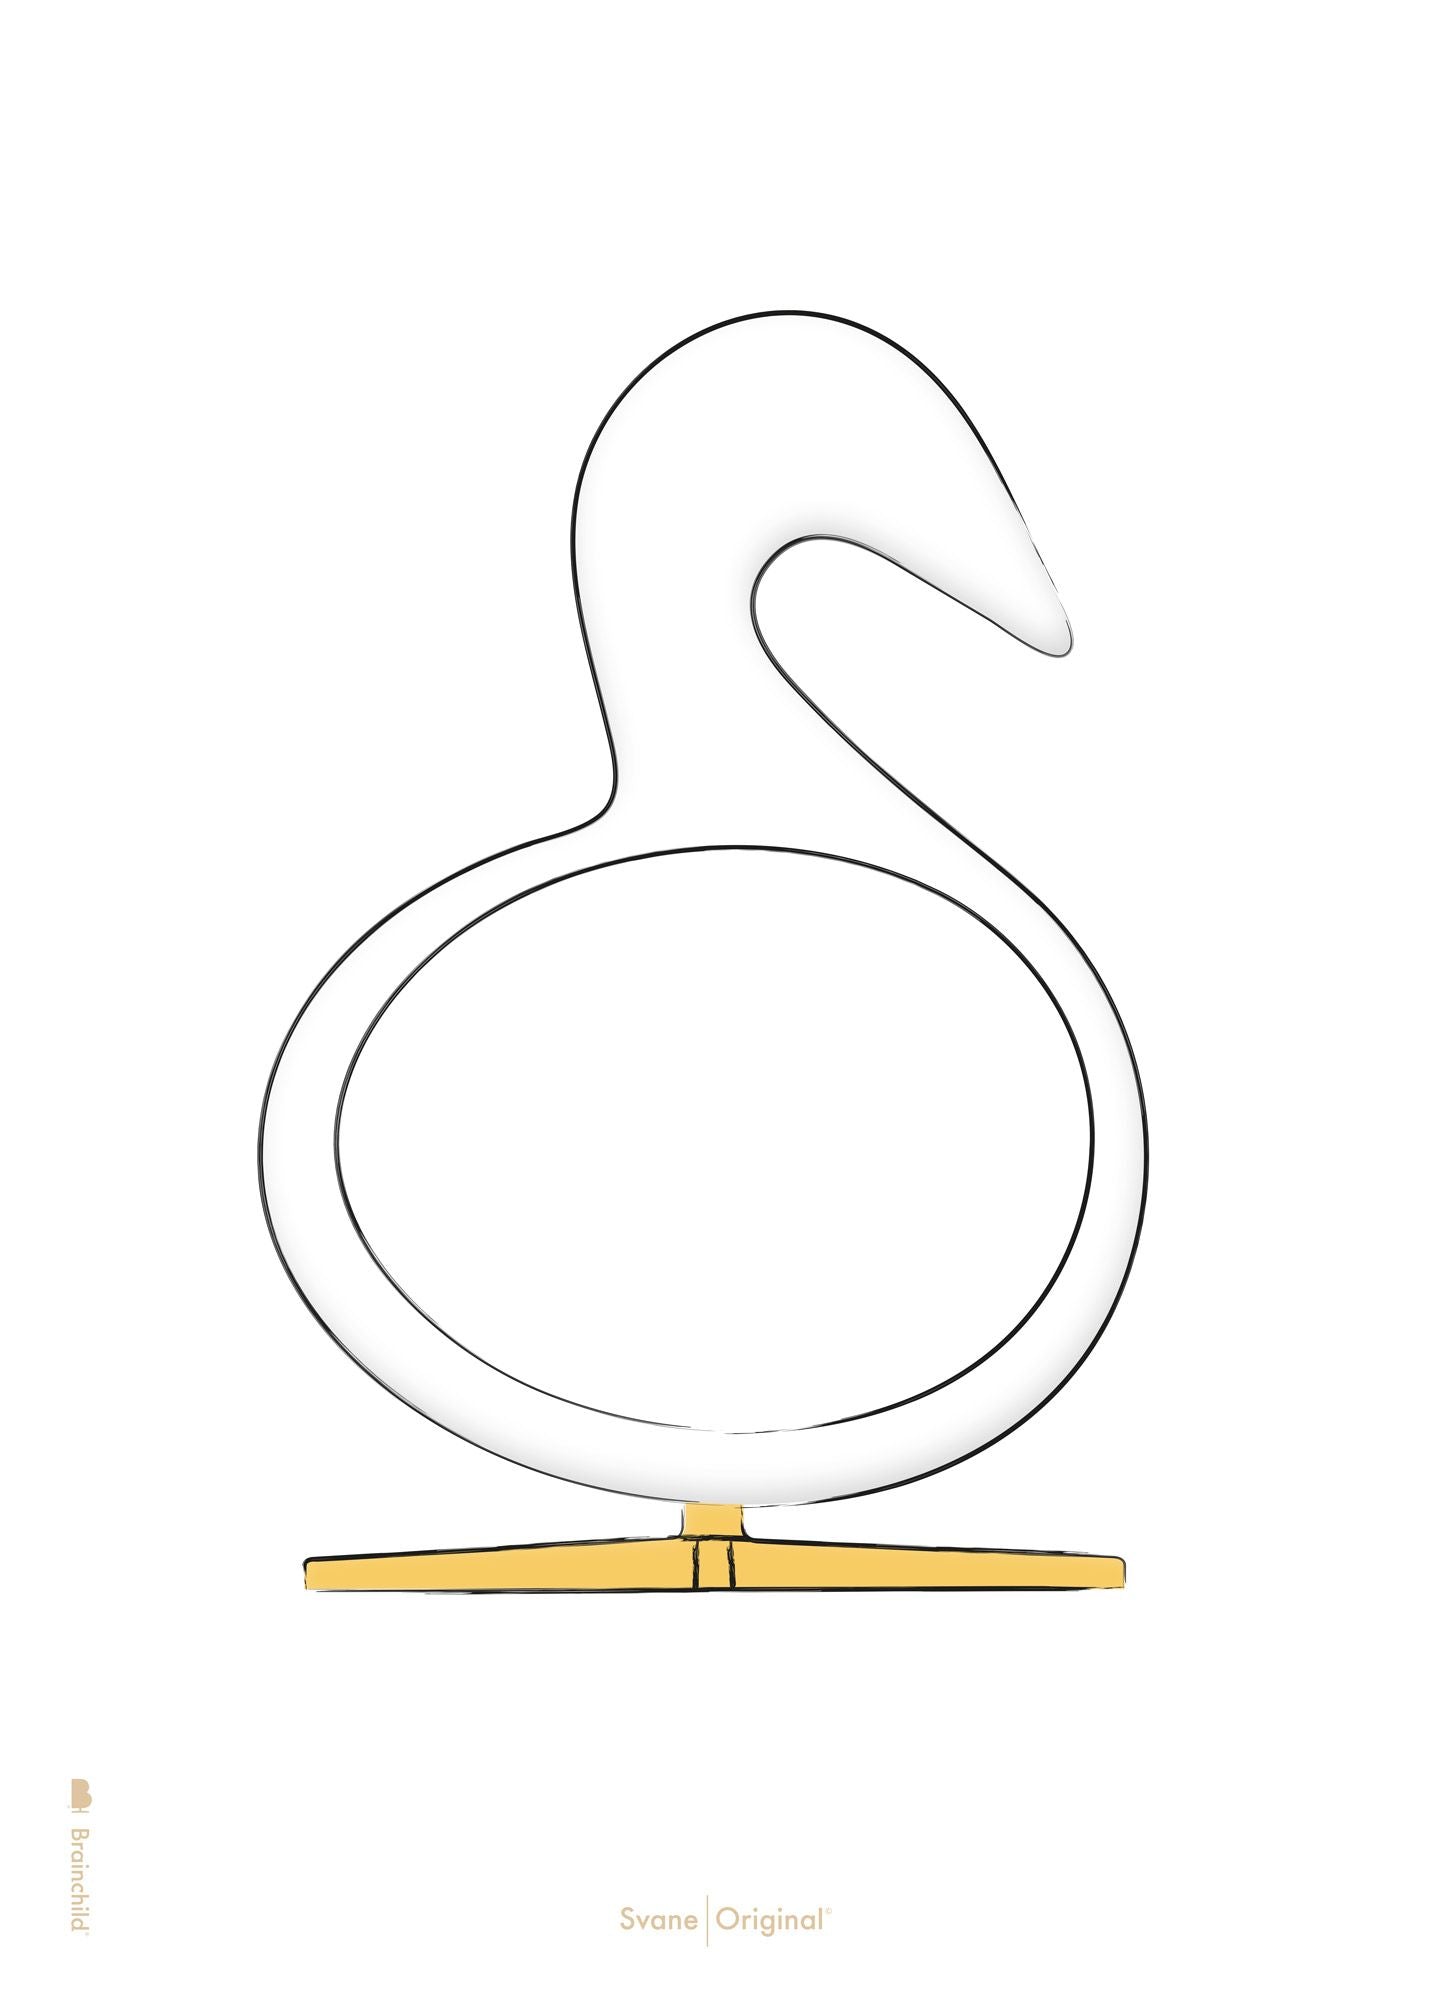 Brainchild Swan Design Sketch Poster sans cadre 50x70 Cm, White Background